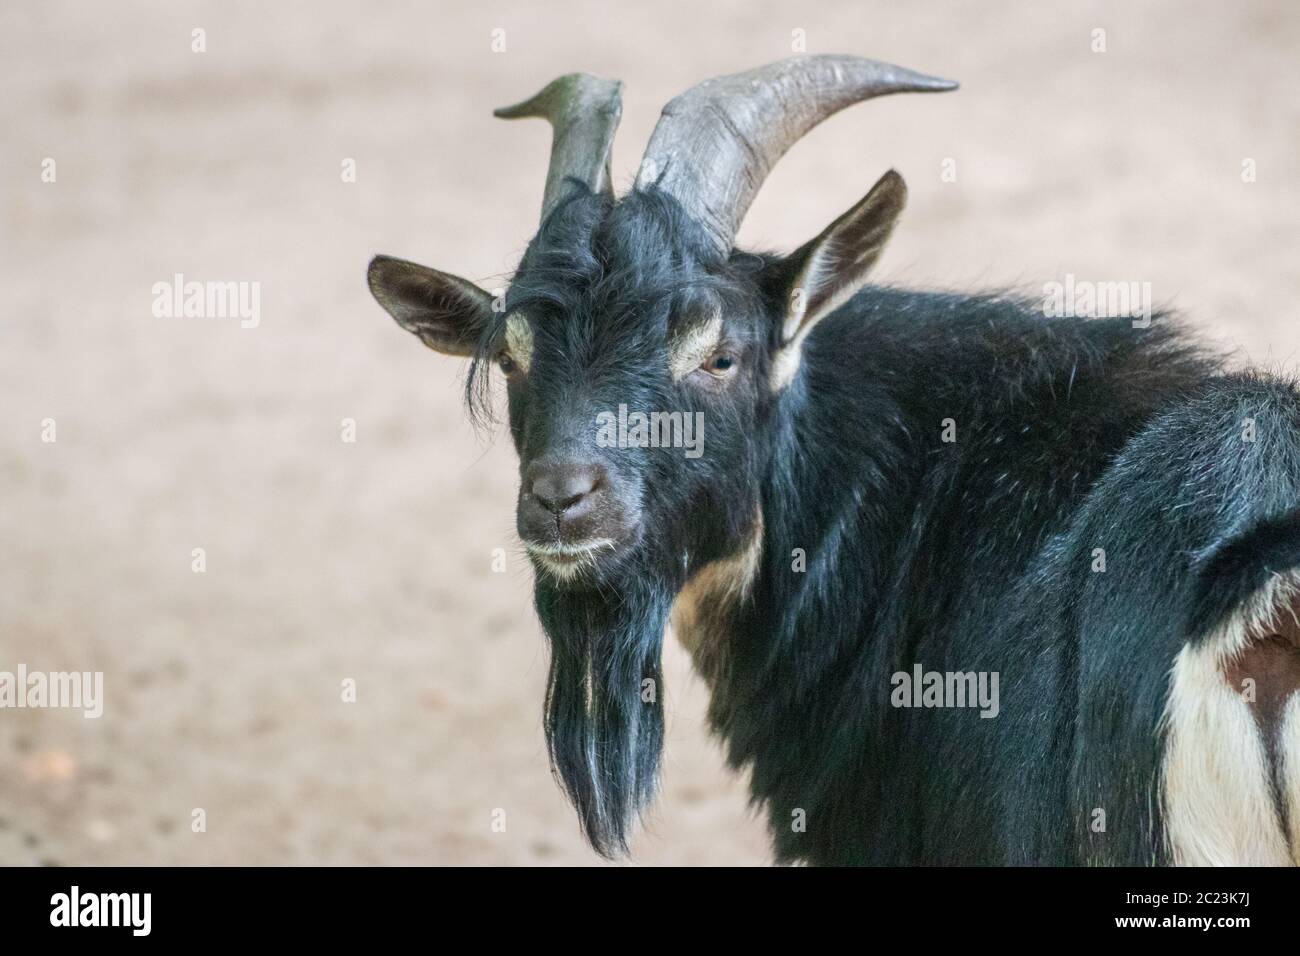 Cerca de una sola cabra billy en un parque de animales Foto de stock